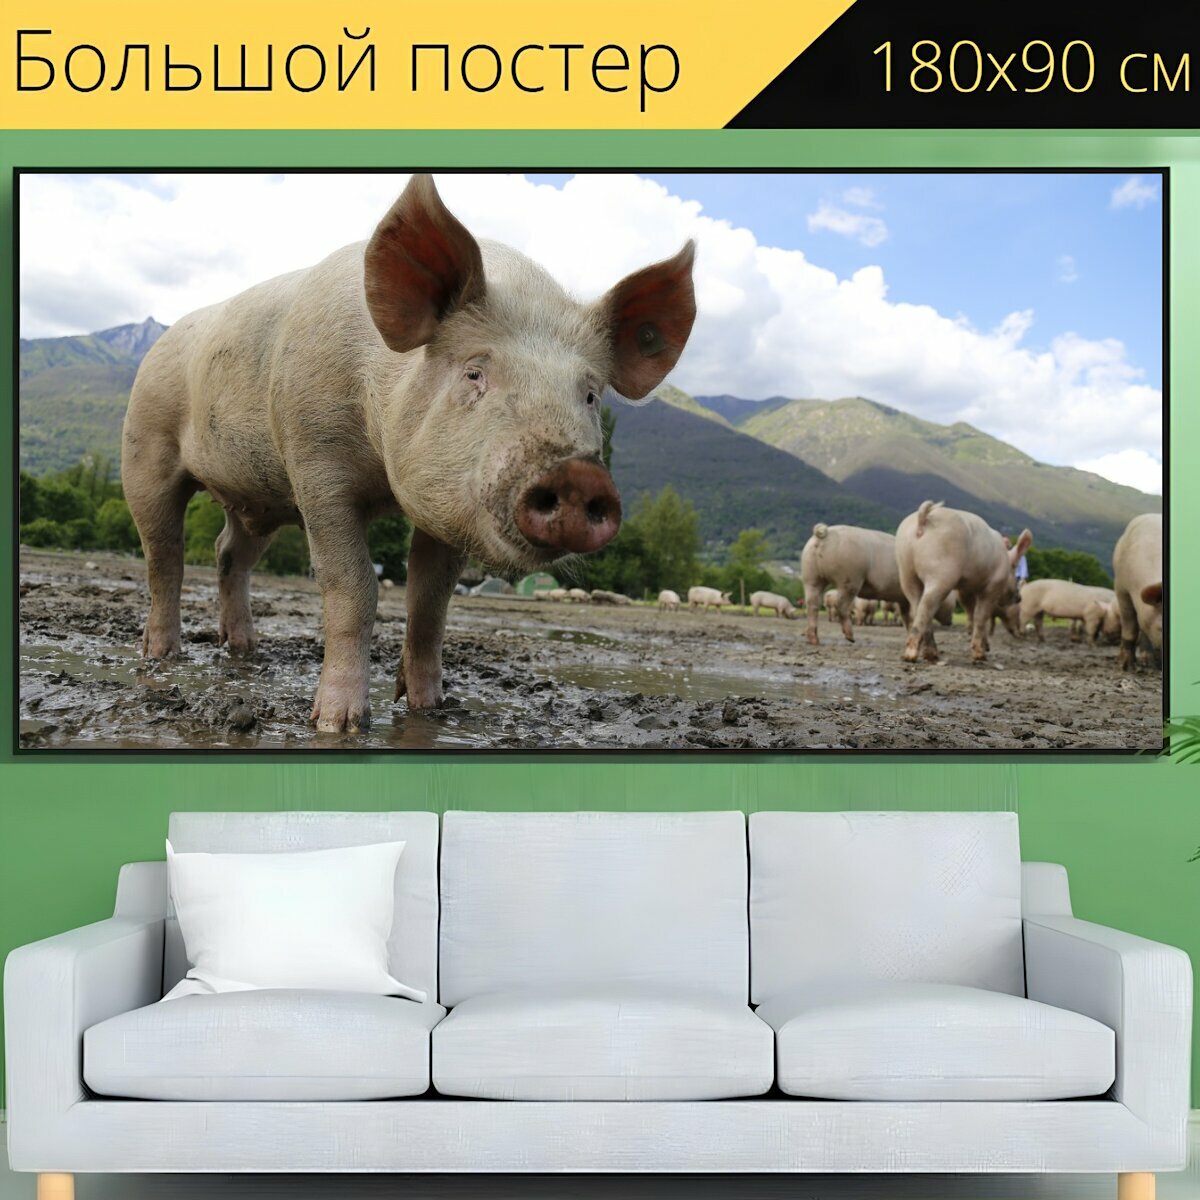 Большой постер "Свинья, сеять, домашняя свинья" 180 x 90 см. для интерьера